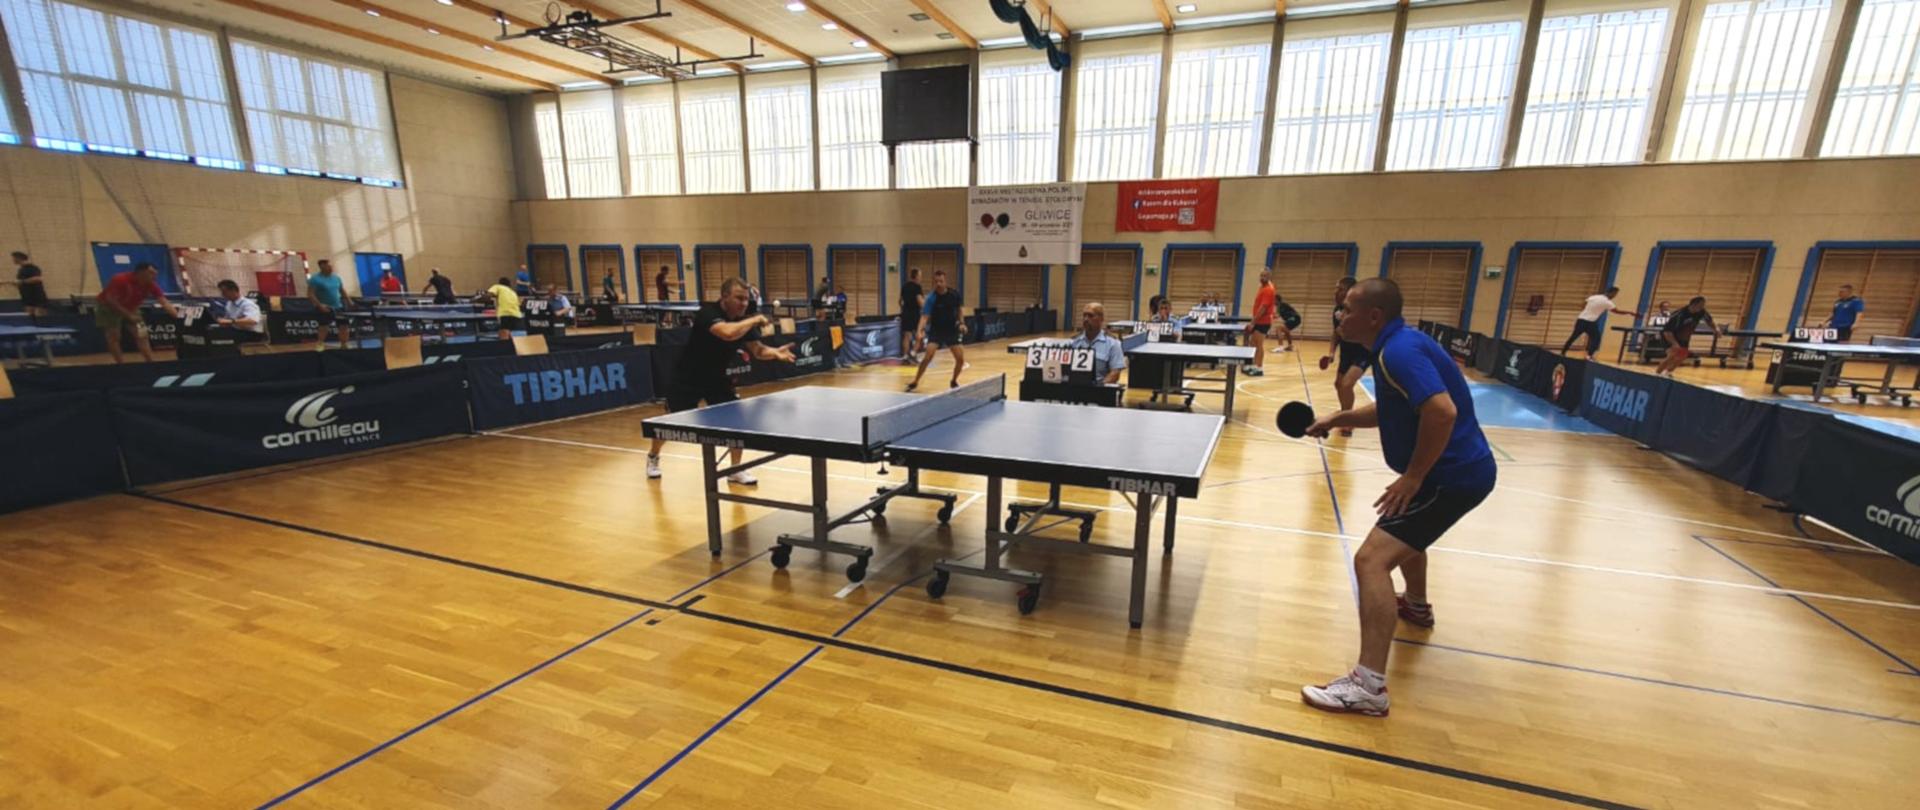 Na zdjęciu widoczne wnętrze hali sportowej, na pierwszym stół do tenisa, przy których grają zawodnicy w strojach sportowych. Na dalszym planie kolejne stoły i grający zawodnicy.